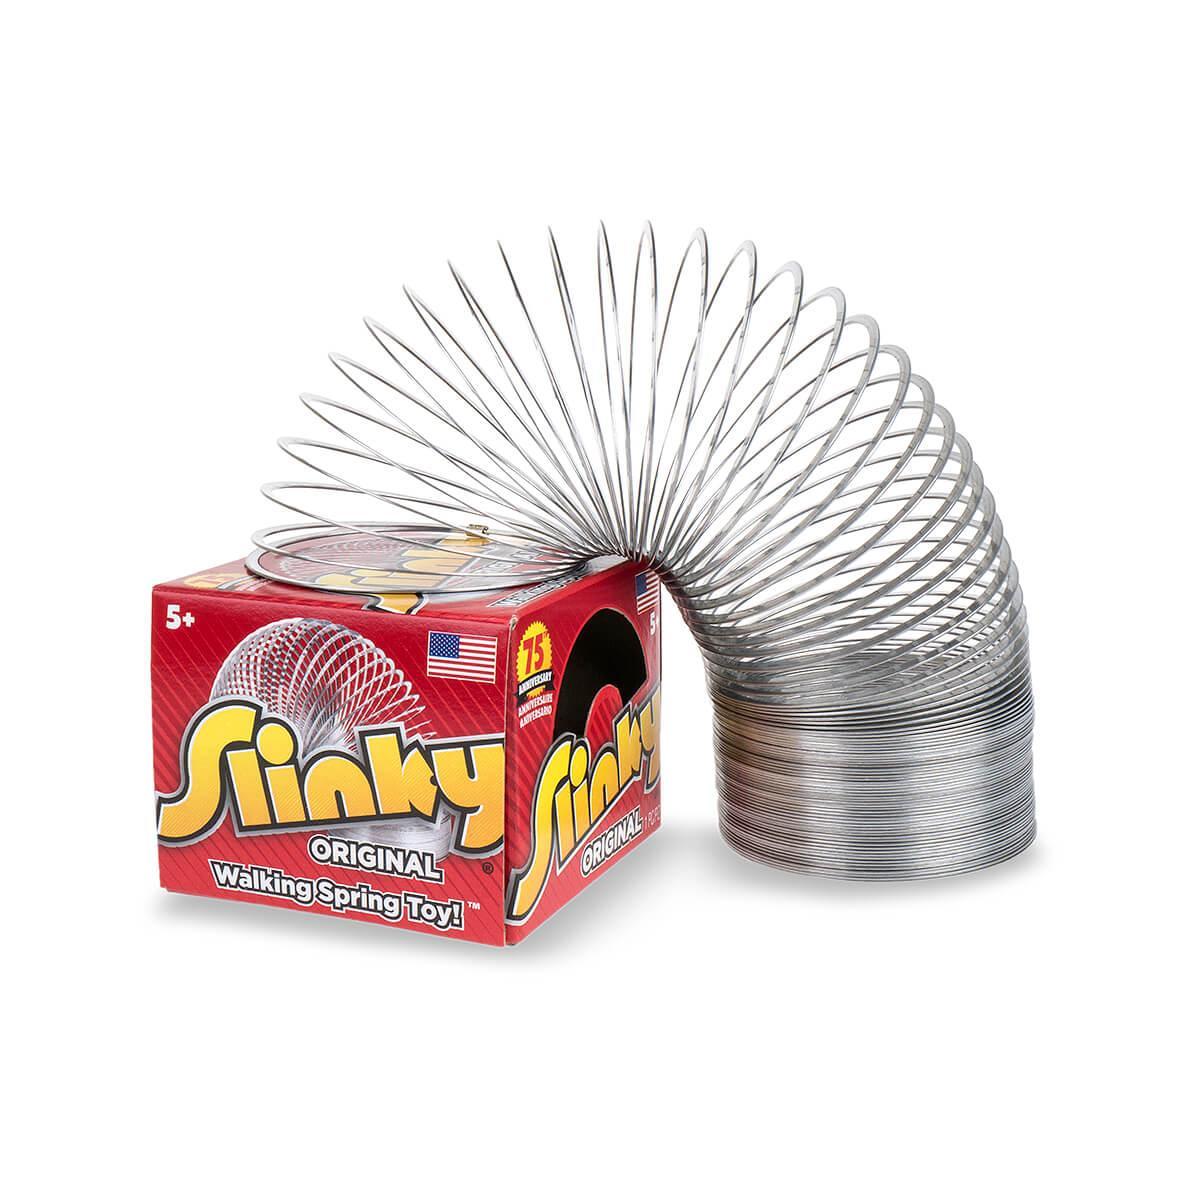  Original Slinky Toy